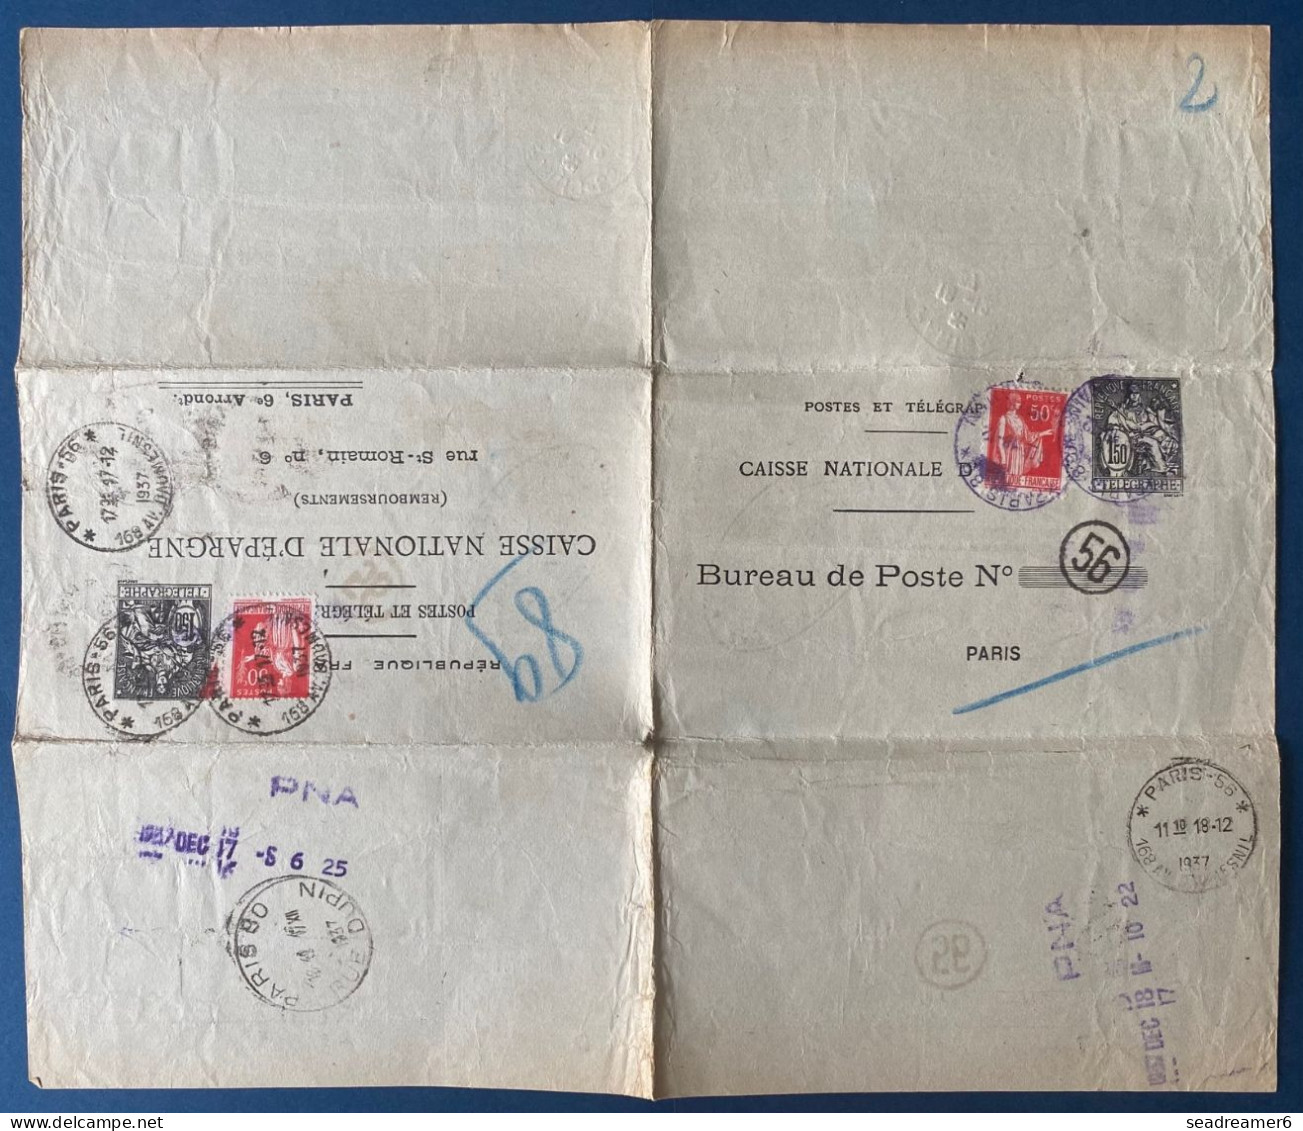 France 1937 Entier Postal Chaplain 1.50 F Noir + 50 C Paix Rouge Format 278 X 238 Mm. CHA P4 TTB - Pneumatici